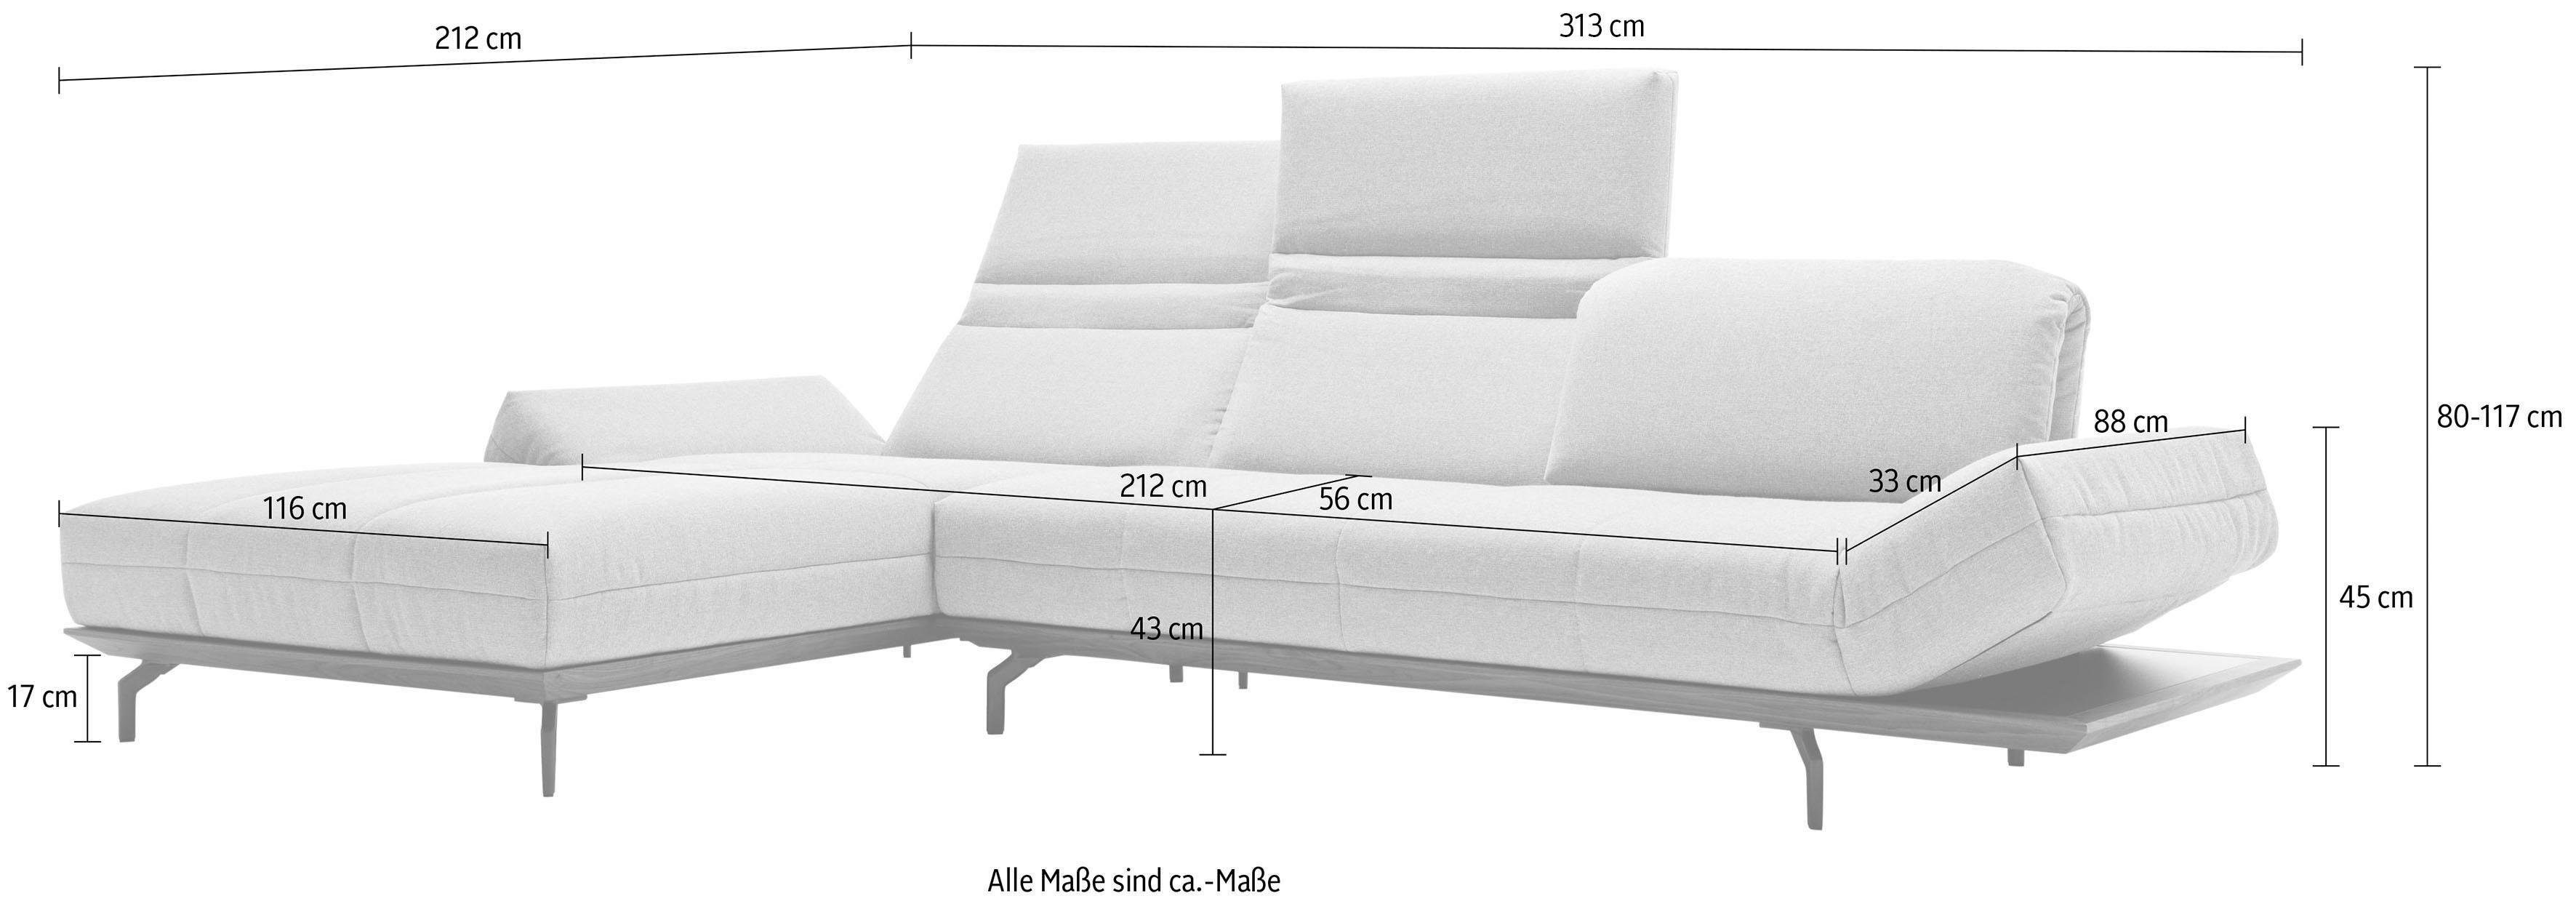 313 2 Qualitäten, hs.420, in Holzrahmen Natur sofa Ecksofa Breite oder Nußbaum, in hülsta cm Eiche